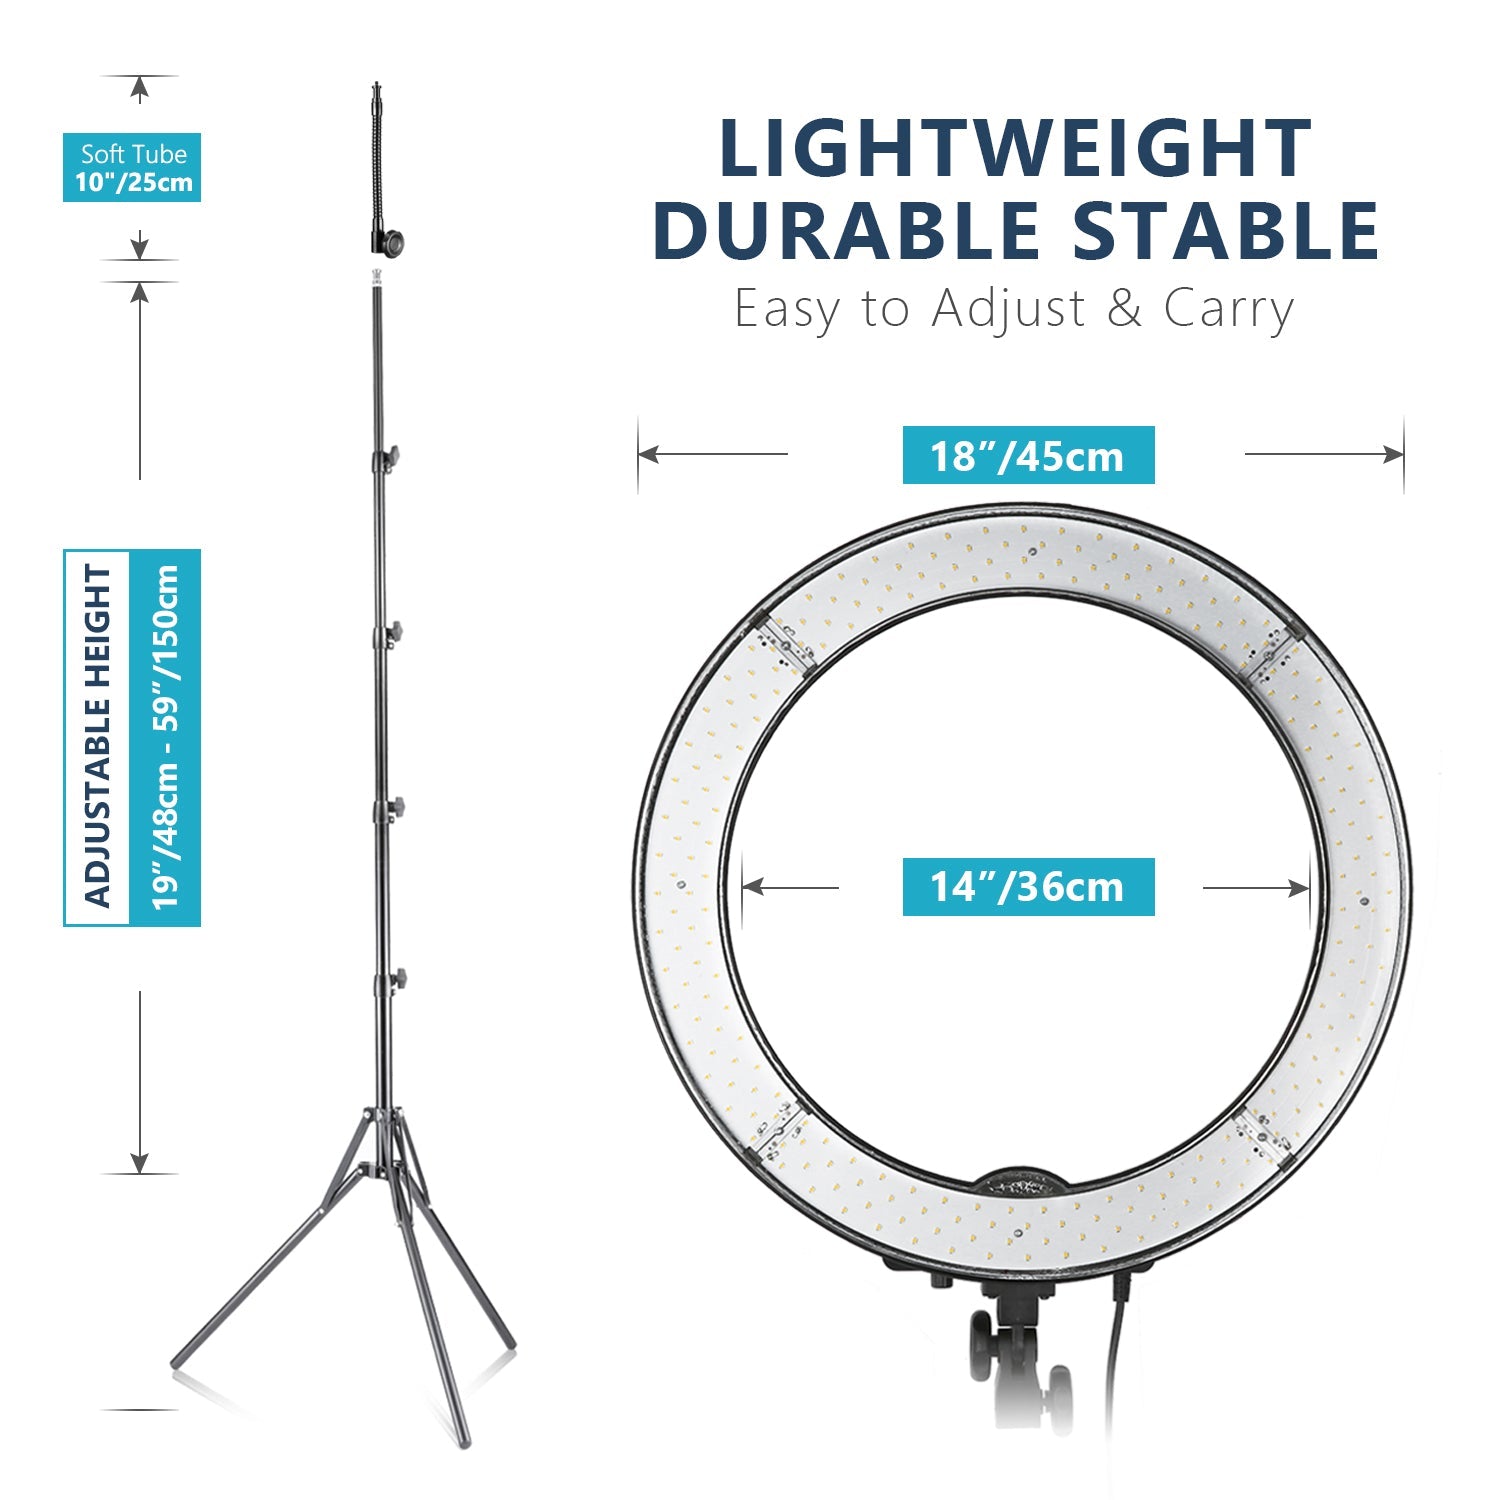  Neewer Anillo de luz de 18 pulgadas, 55 W regulable 5500K luz  con 240 LED filtro de color, tubo suave y bolsa de transporte para ,  TikTok, selfies y fotografía, compatible